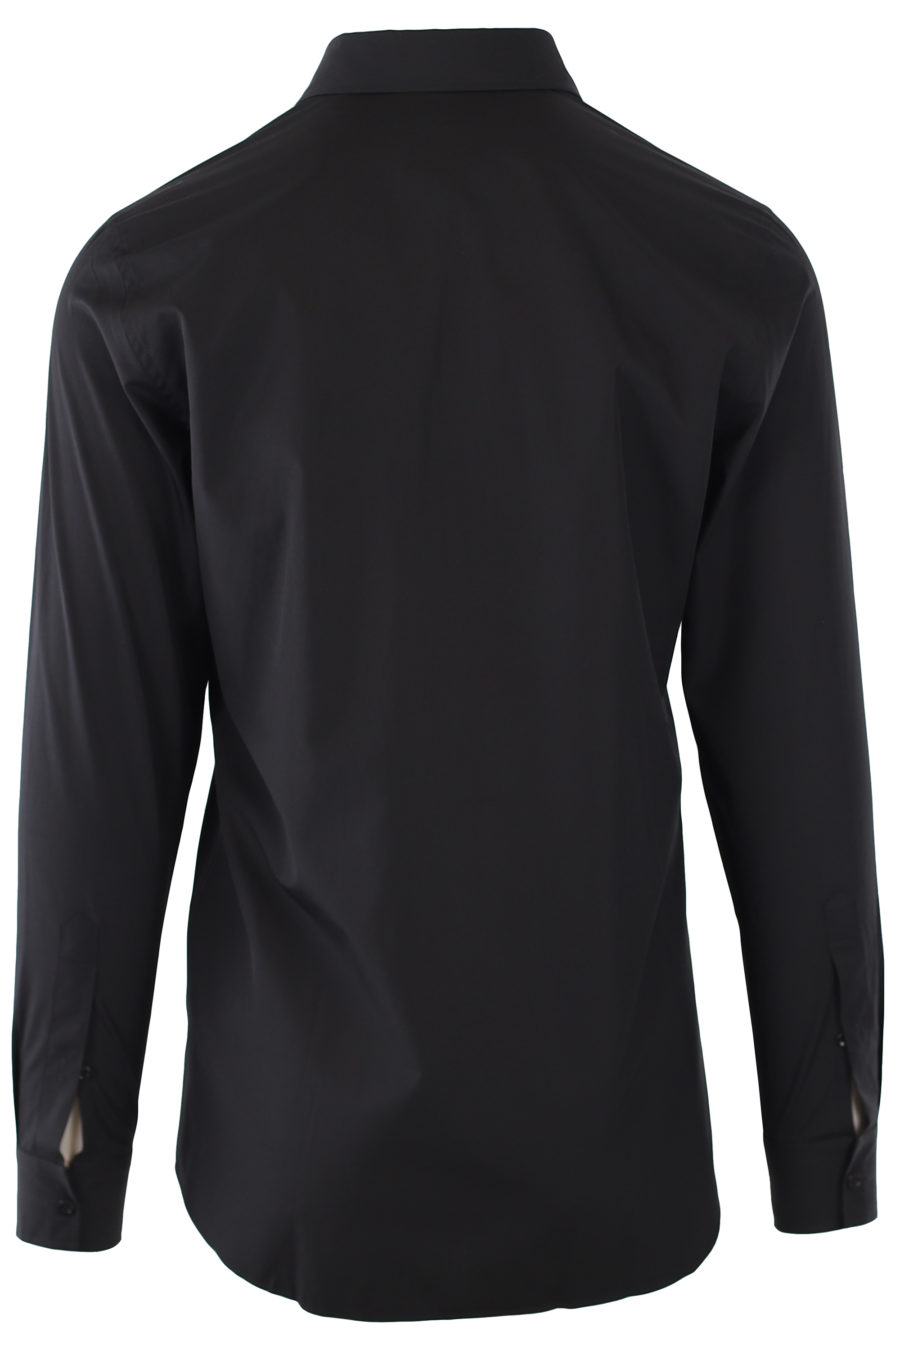 Camisa negra con logo oso - IMG 9312